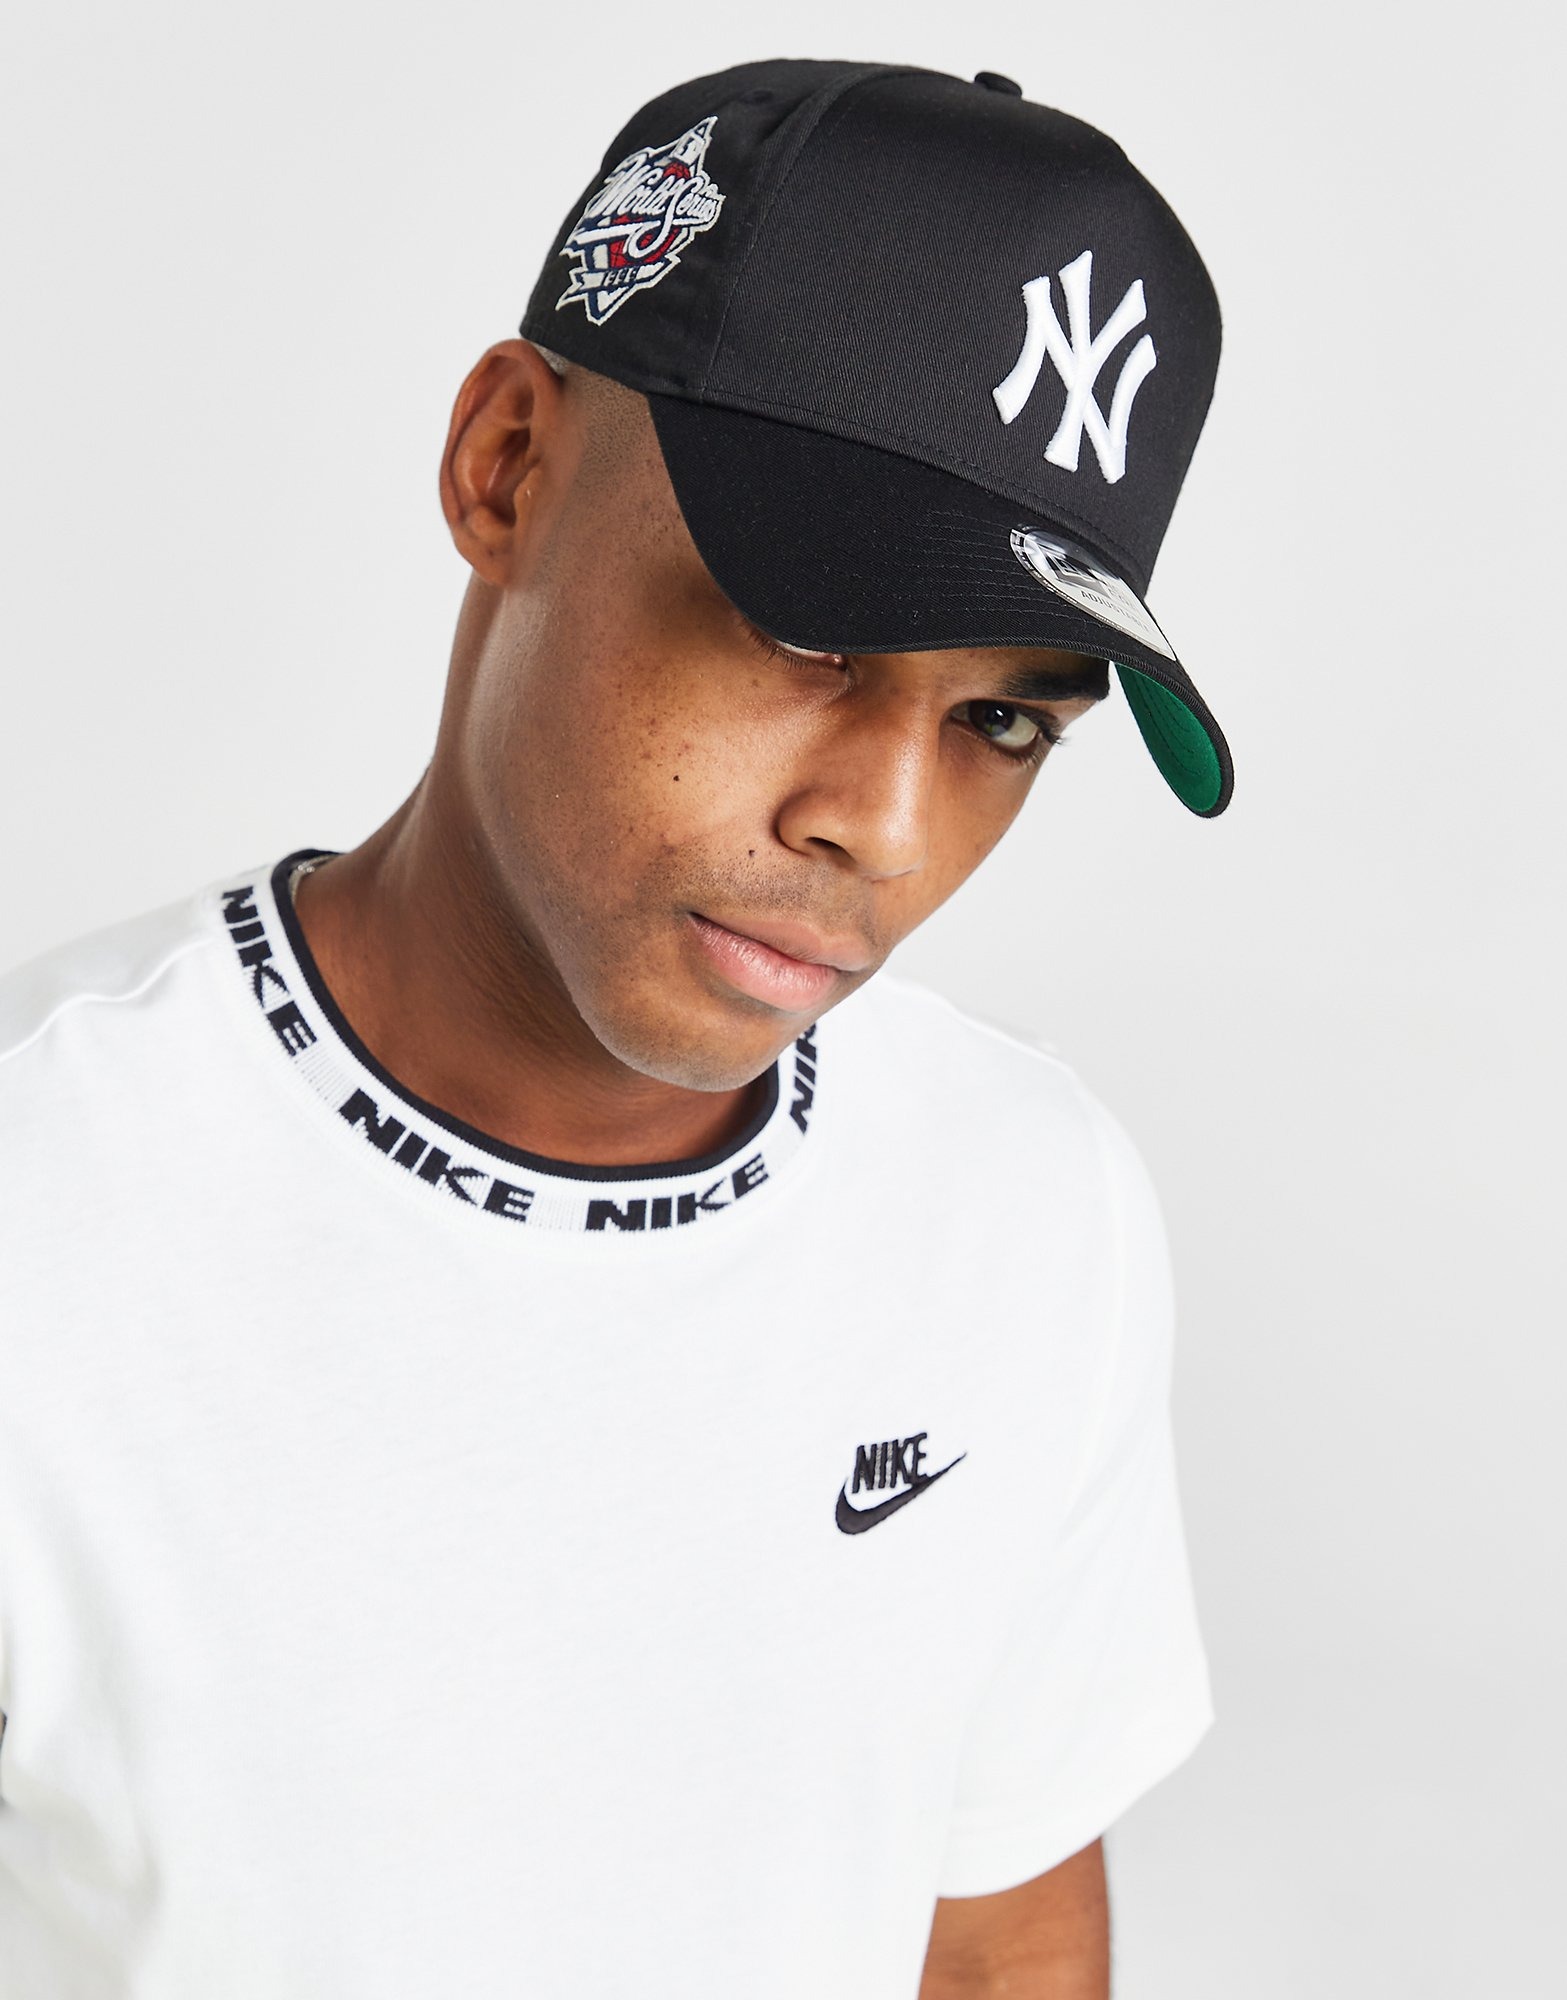 New Era, Accessories, New York Yankees Mens Black Mlb Fan Apparel  Souvenirs Cap Hats 9twenty New Era